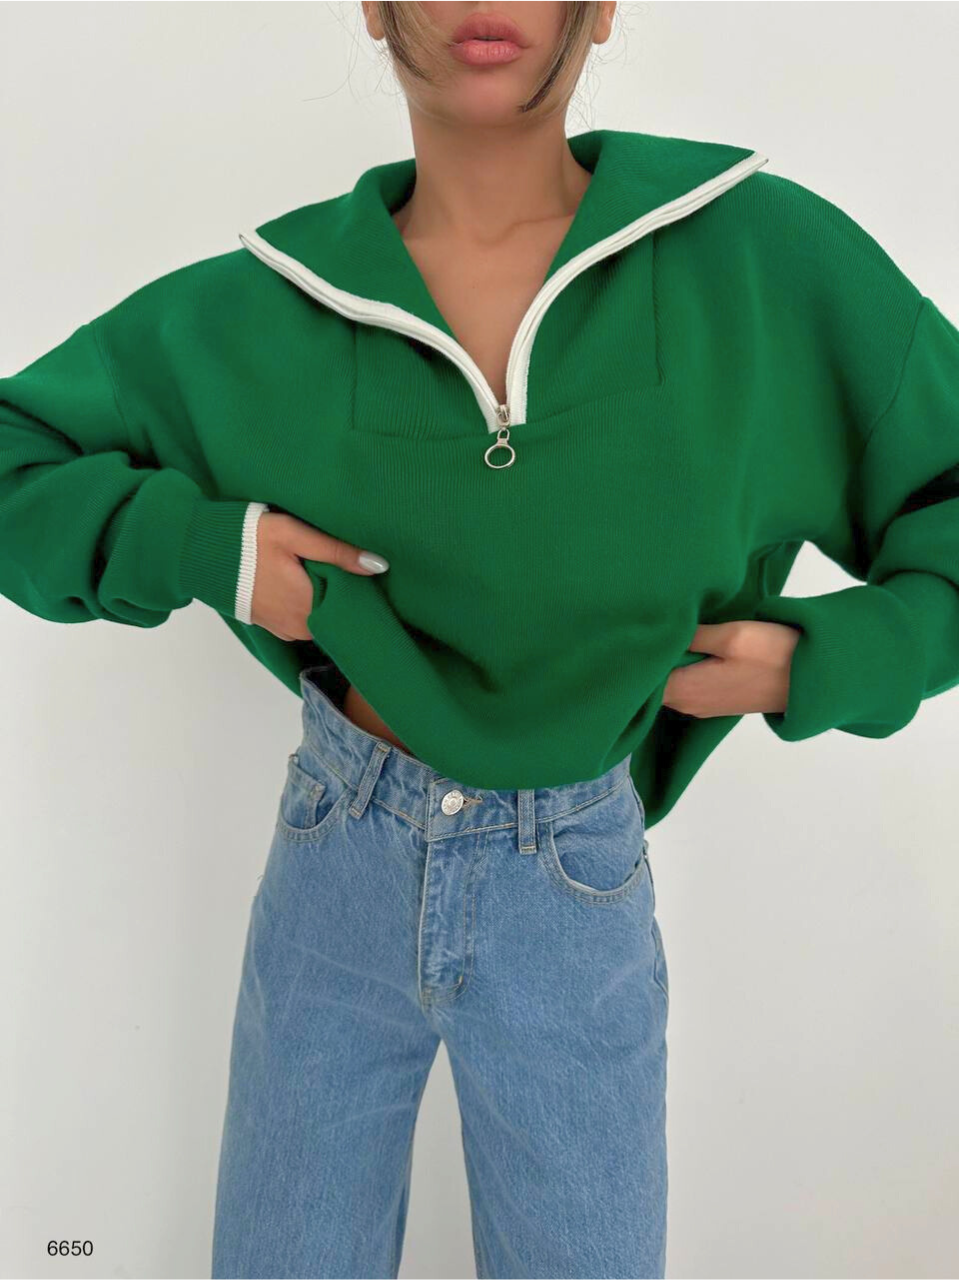 Collar Sweater in Green - Noxlook